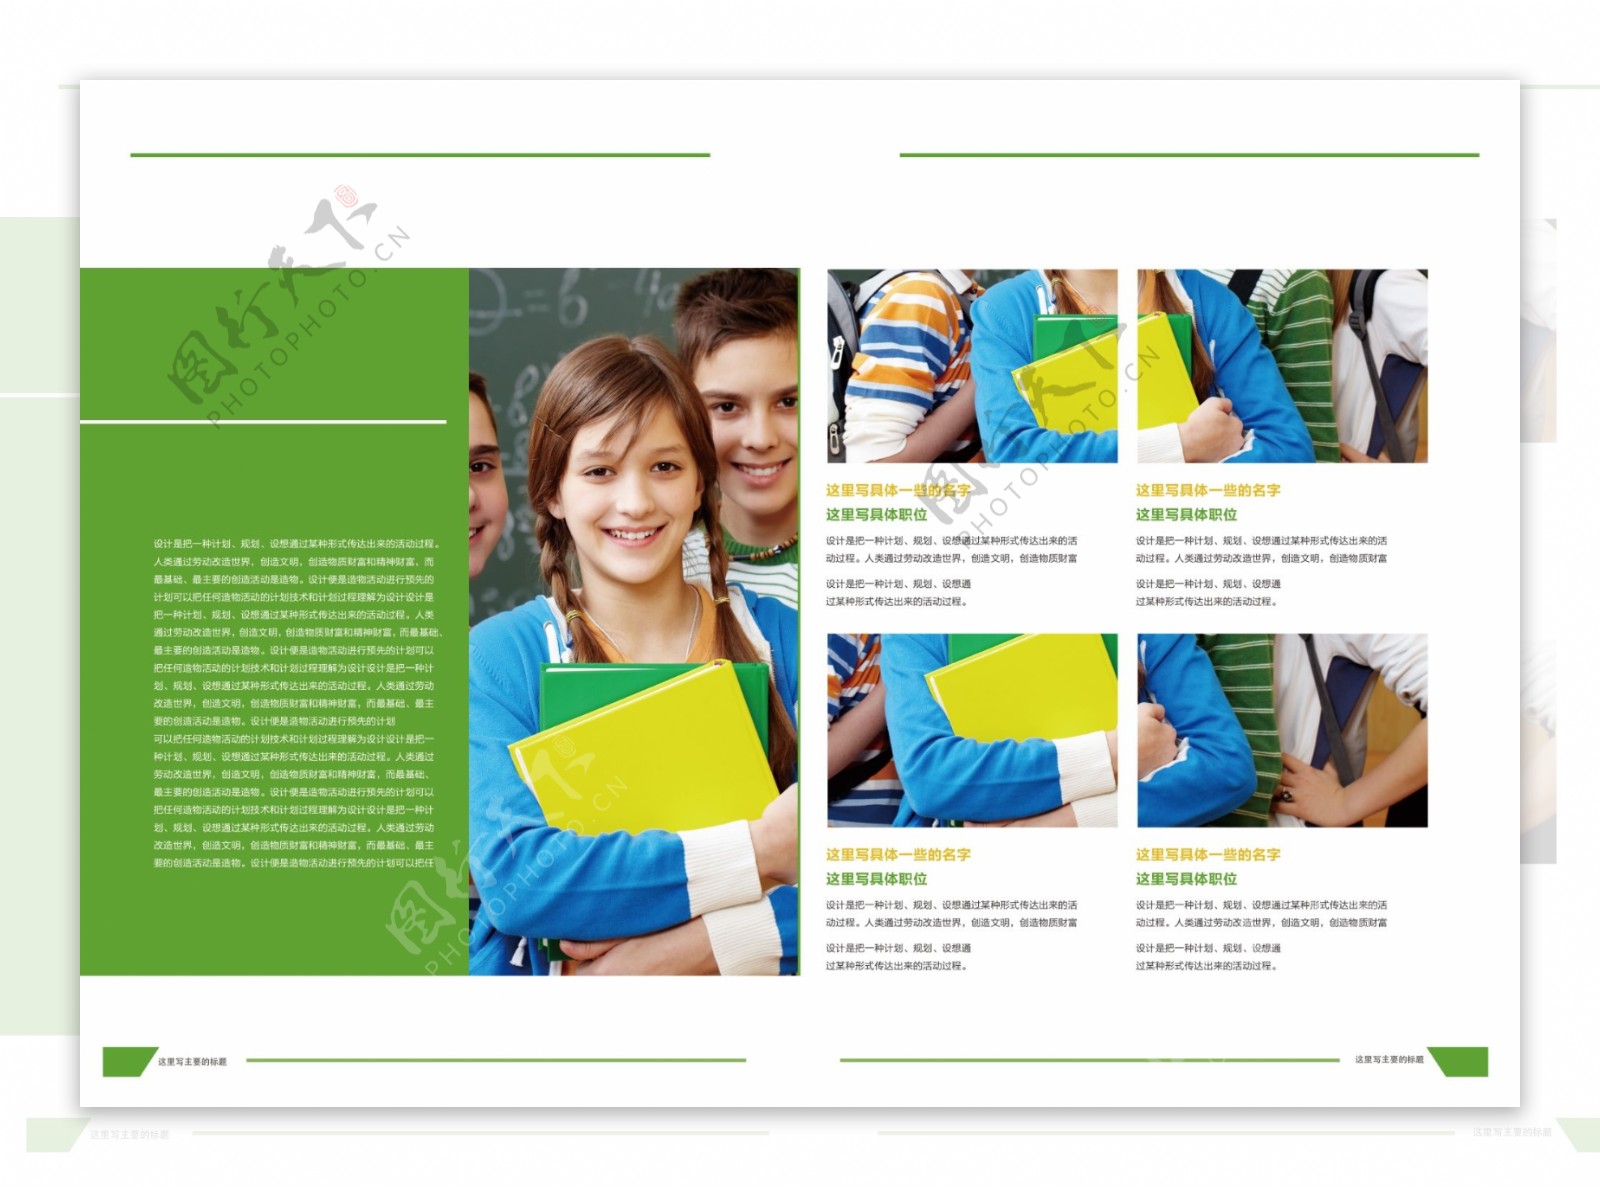 原创学校教育培训绿色招生画册设计模板